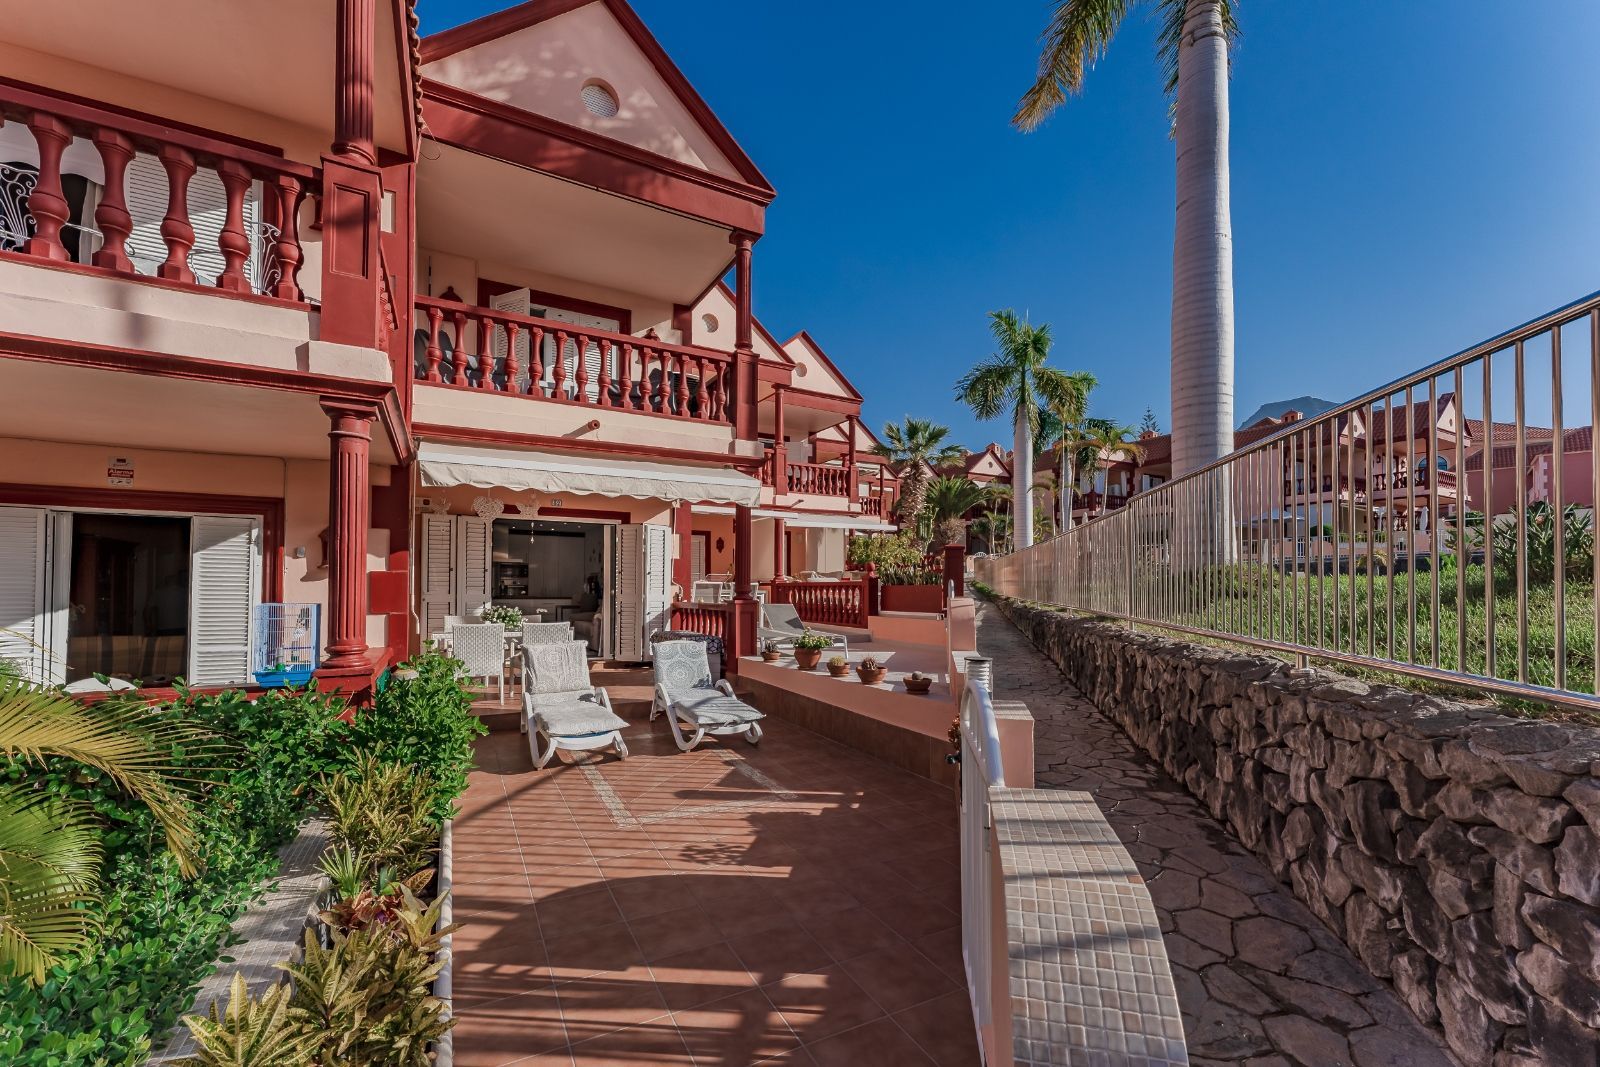 Apartamento en venta en Tenerife 2